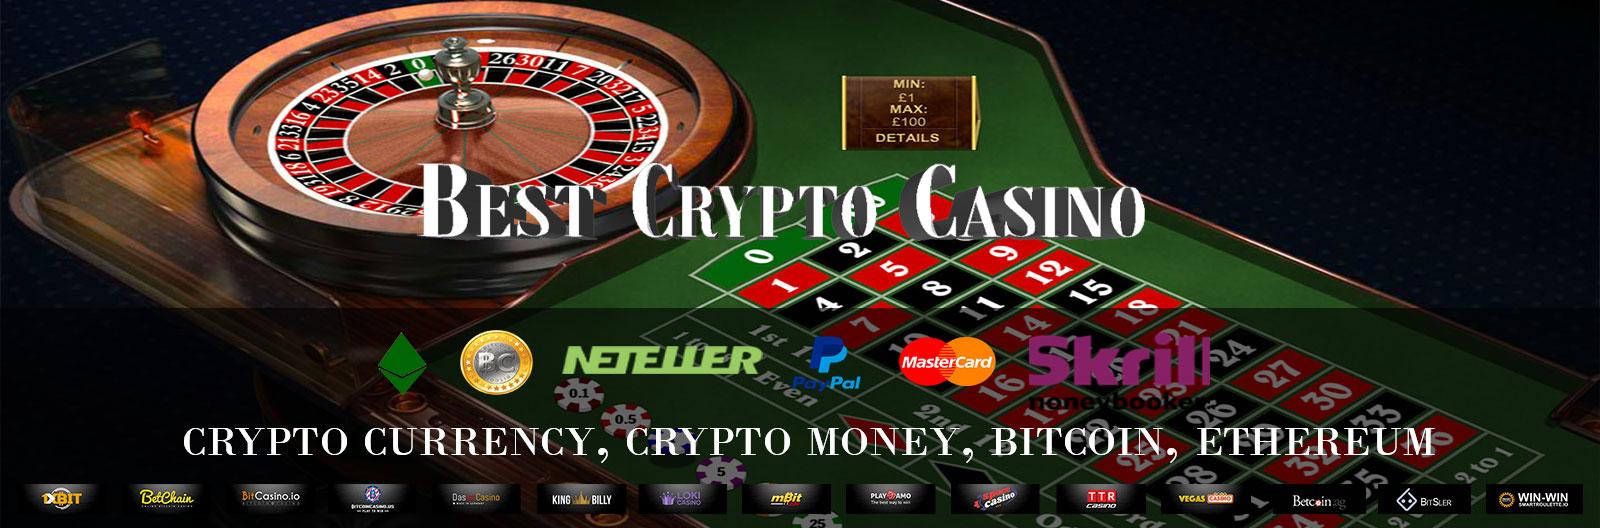 Hello bitcoin casino free 50 spins